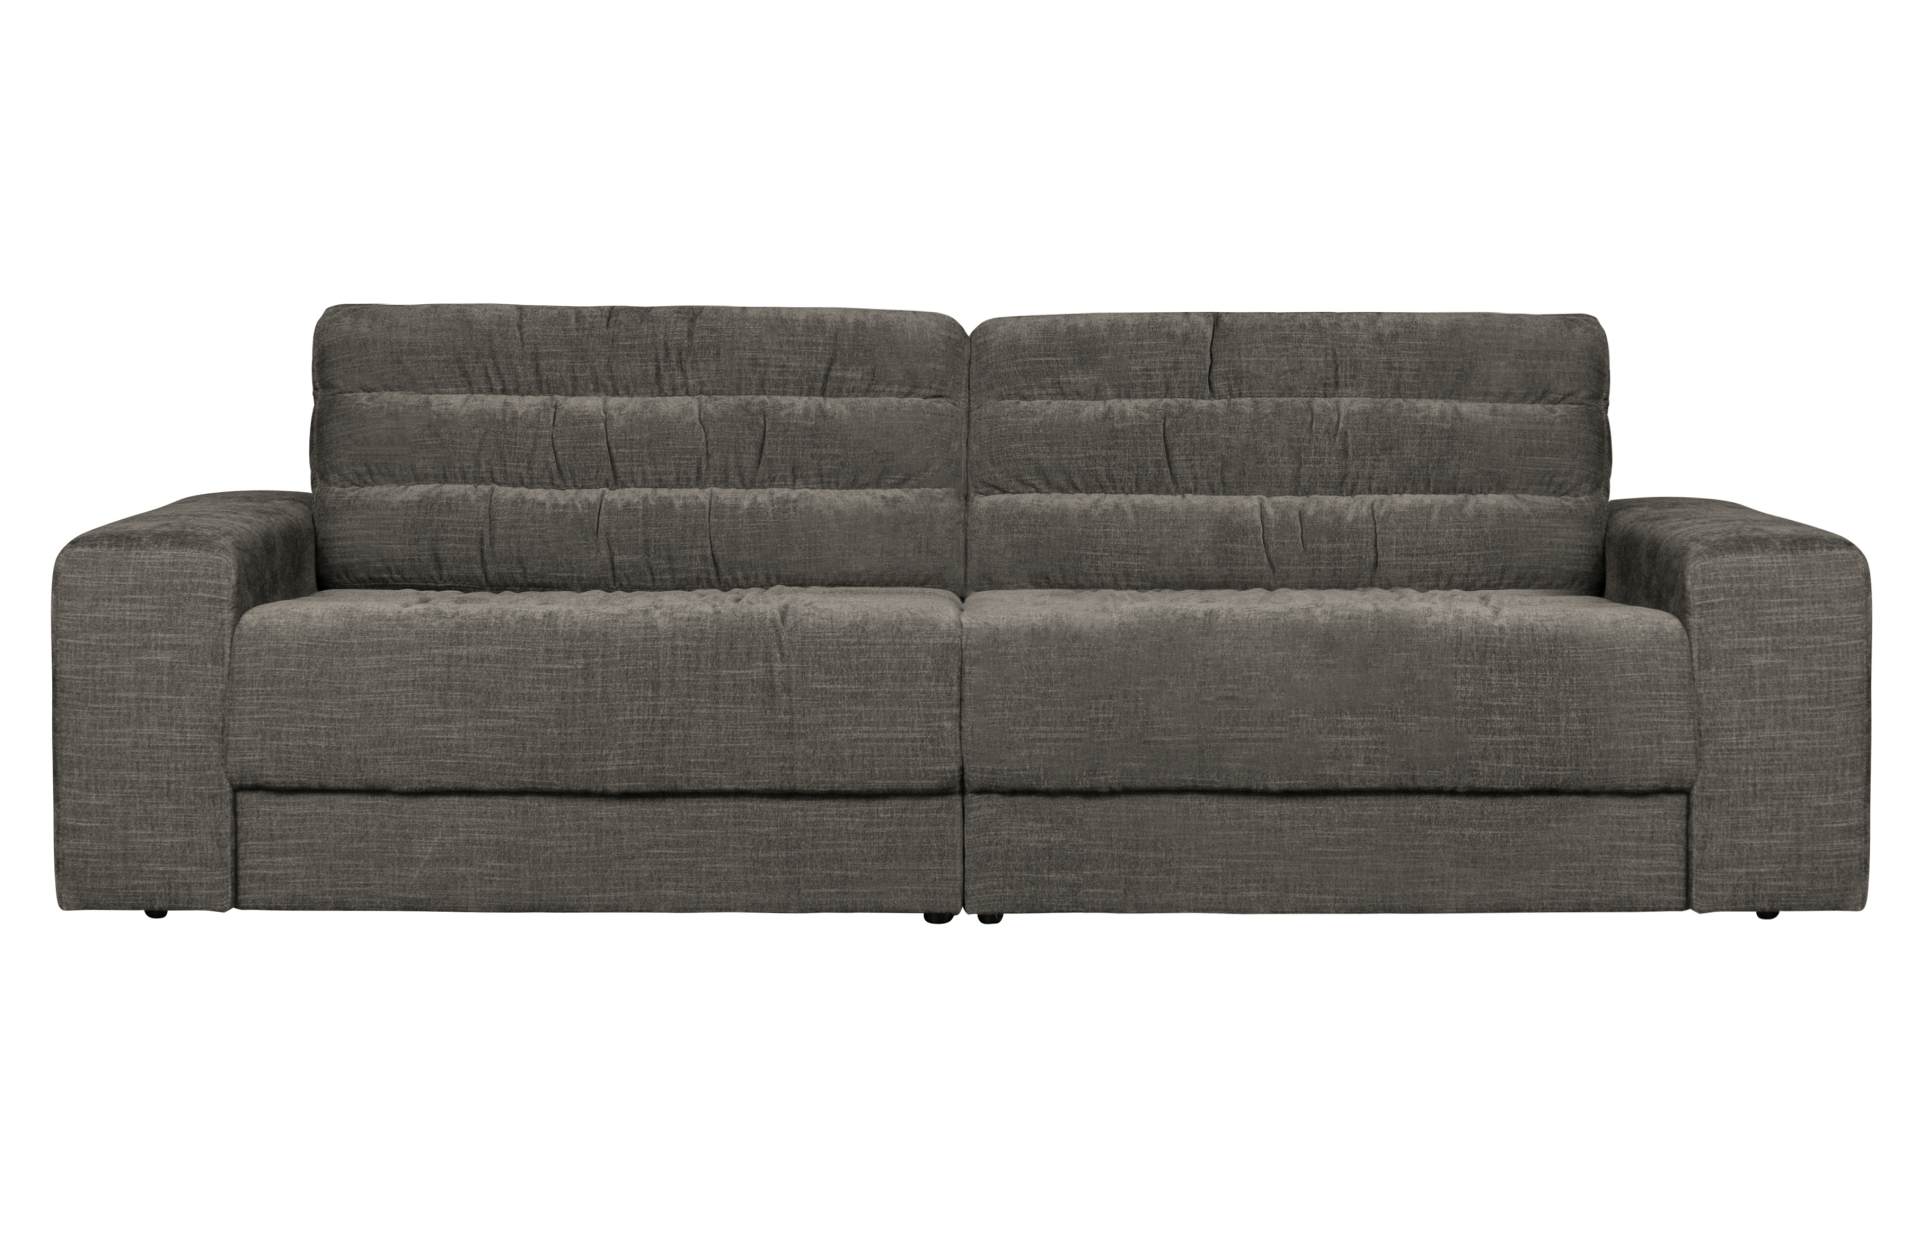 Das Sofa Date überzeugt mit seinem klassischen Design. Gefertigt wurde es aus einem Vintage Stoff, welcher einen grauen Farbton besitzen. Das Gestell ist aus Kunststoff und hat eine schwarze Farbe. Das Sofa hat eine Breite von 226 cm.